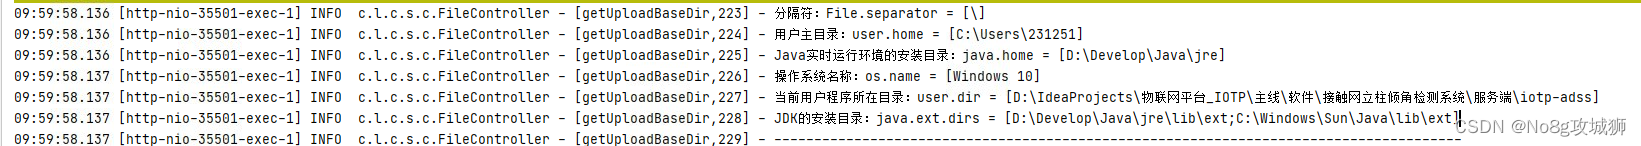 【Java用法】Java在Linux下获取当前程序路径以及在Windows下获取当前路径对比